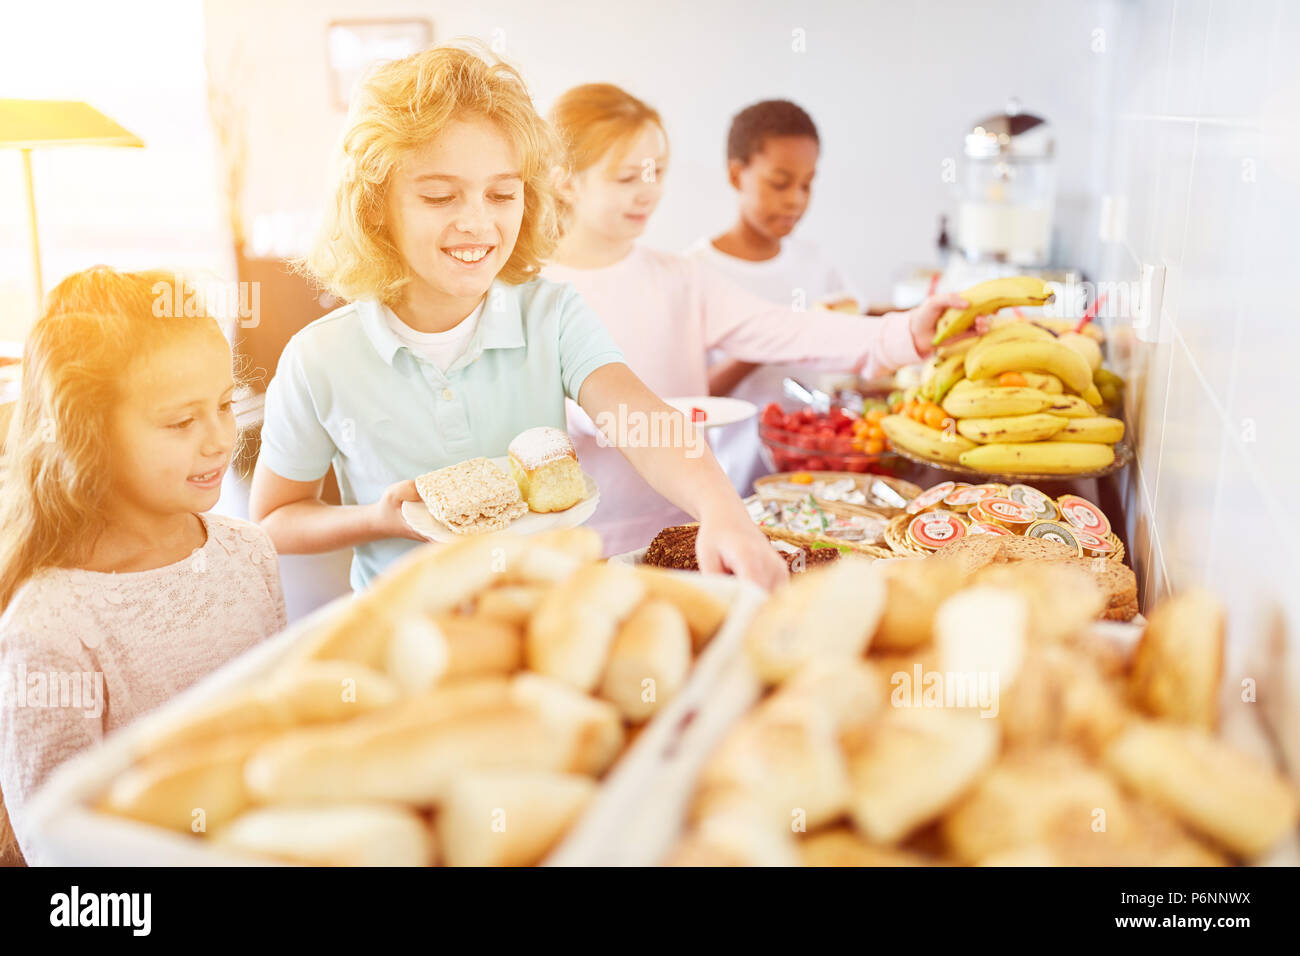 Glückliche Kinder bringen Essen am Buffet der Mensa an der Schule Stockfoto